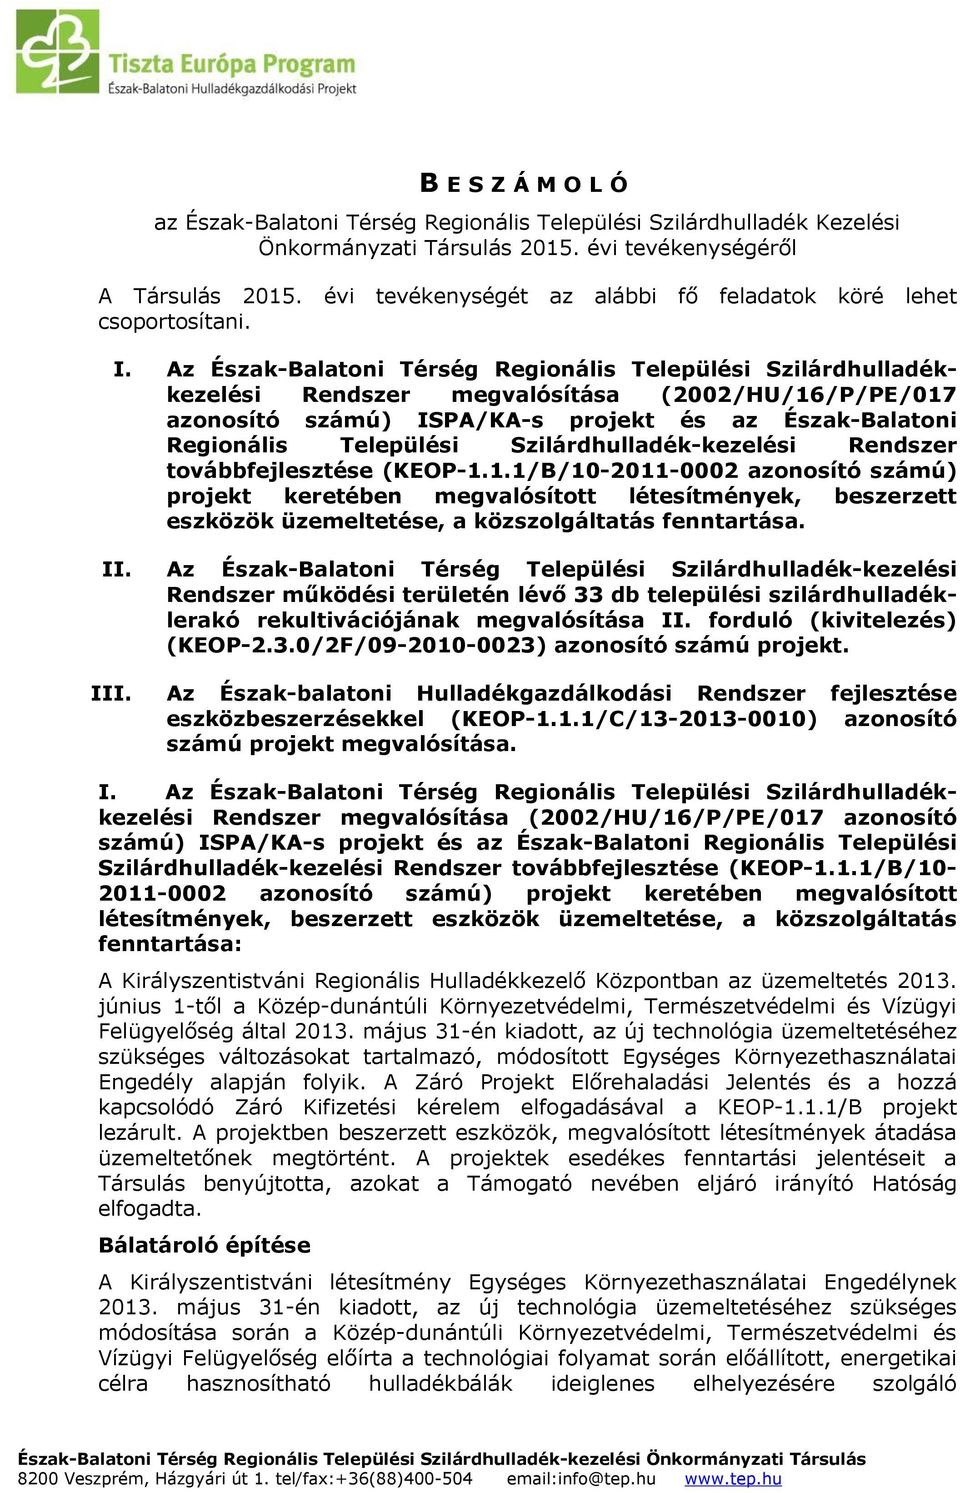 Az Észak-Balatoni Térség Regionális Települési Szilárdhulladékkezelési Rendszer megvalósítása (2002/HU/16/P/PE/017 azonosító számú) ISPA/KA-s projekt és az Észak-Balatoni Regionális Települési